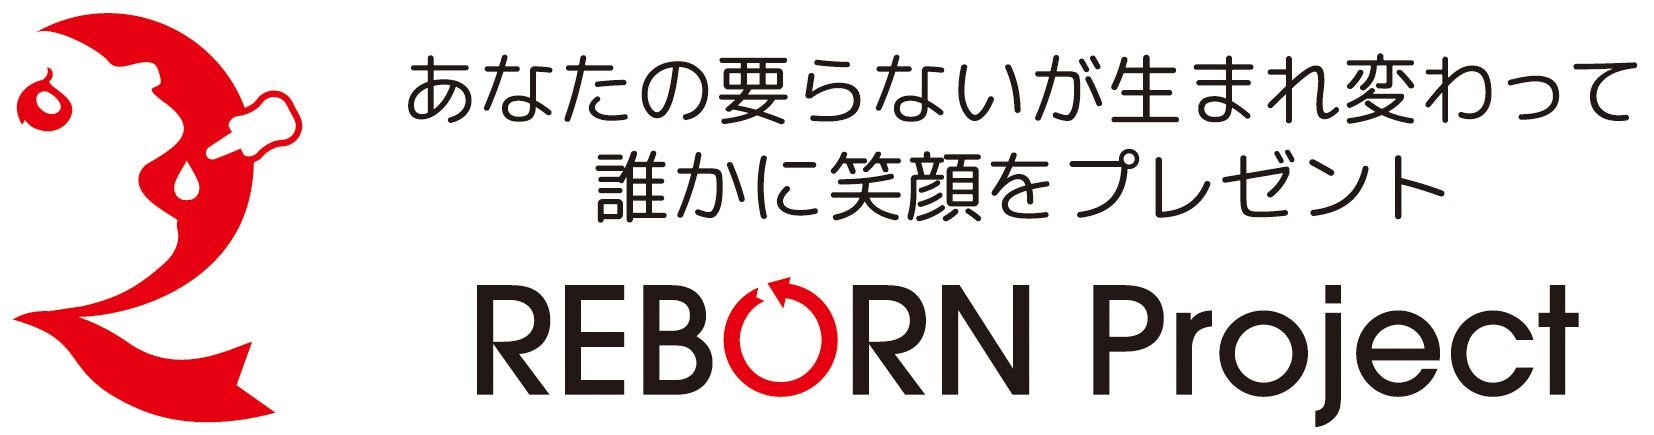 リボーンプロジェクトのロゴ